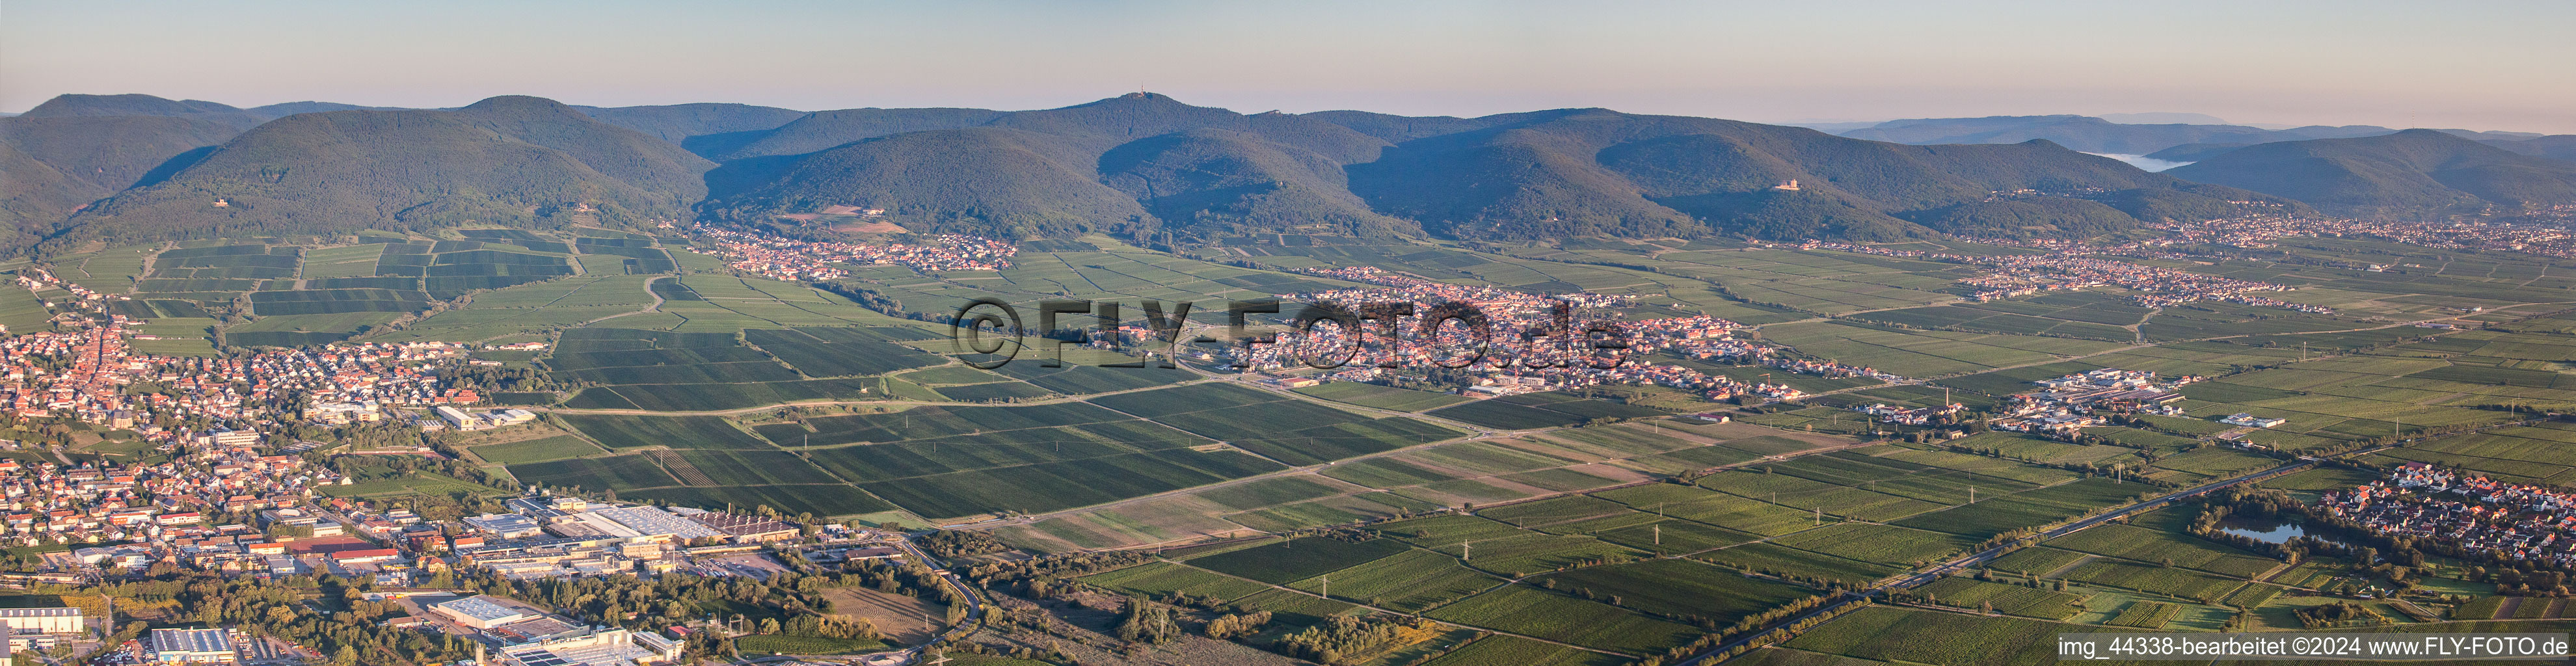 Vue aérienne de Paysage viticole en perspective panoramique des zones viticoles à Maikammer dans le département Rhénanie-Palatinat, Allemagne